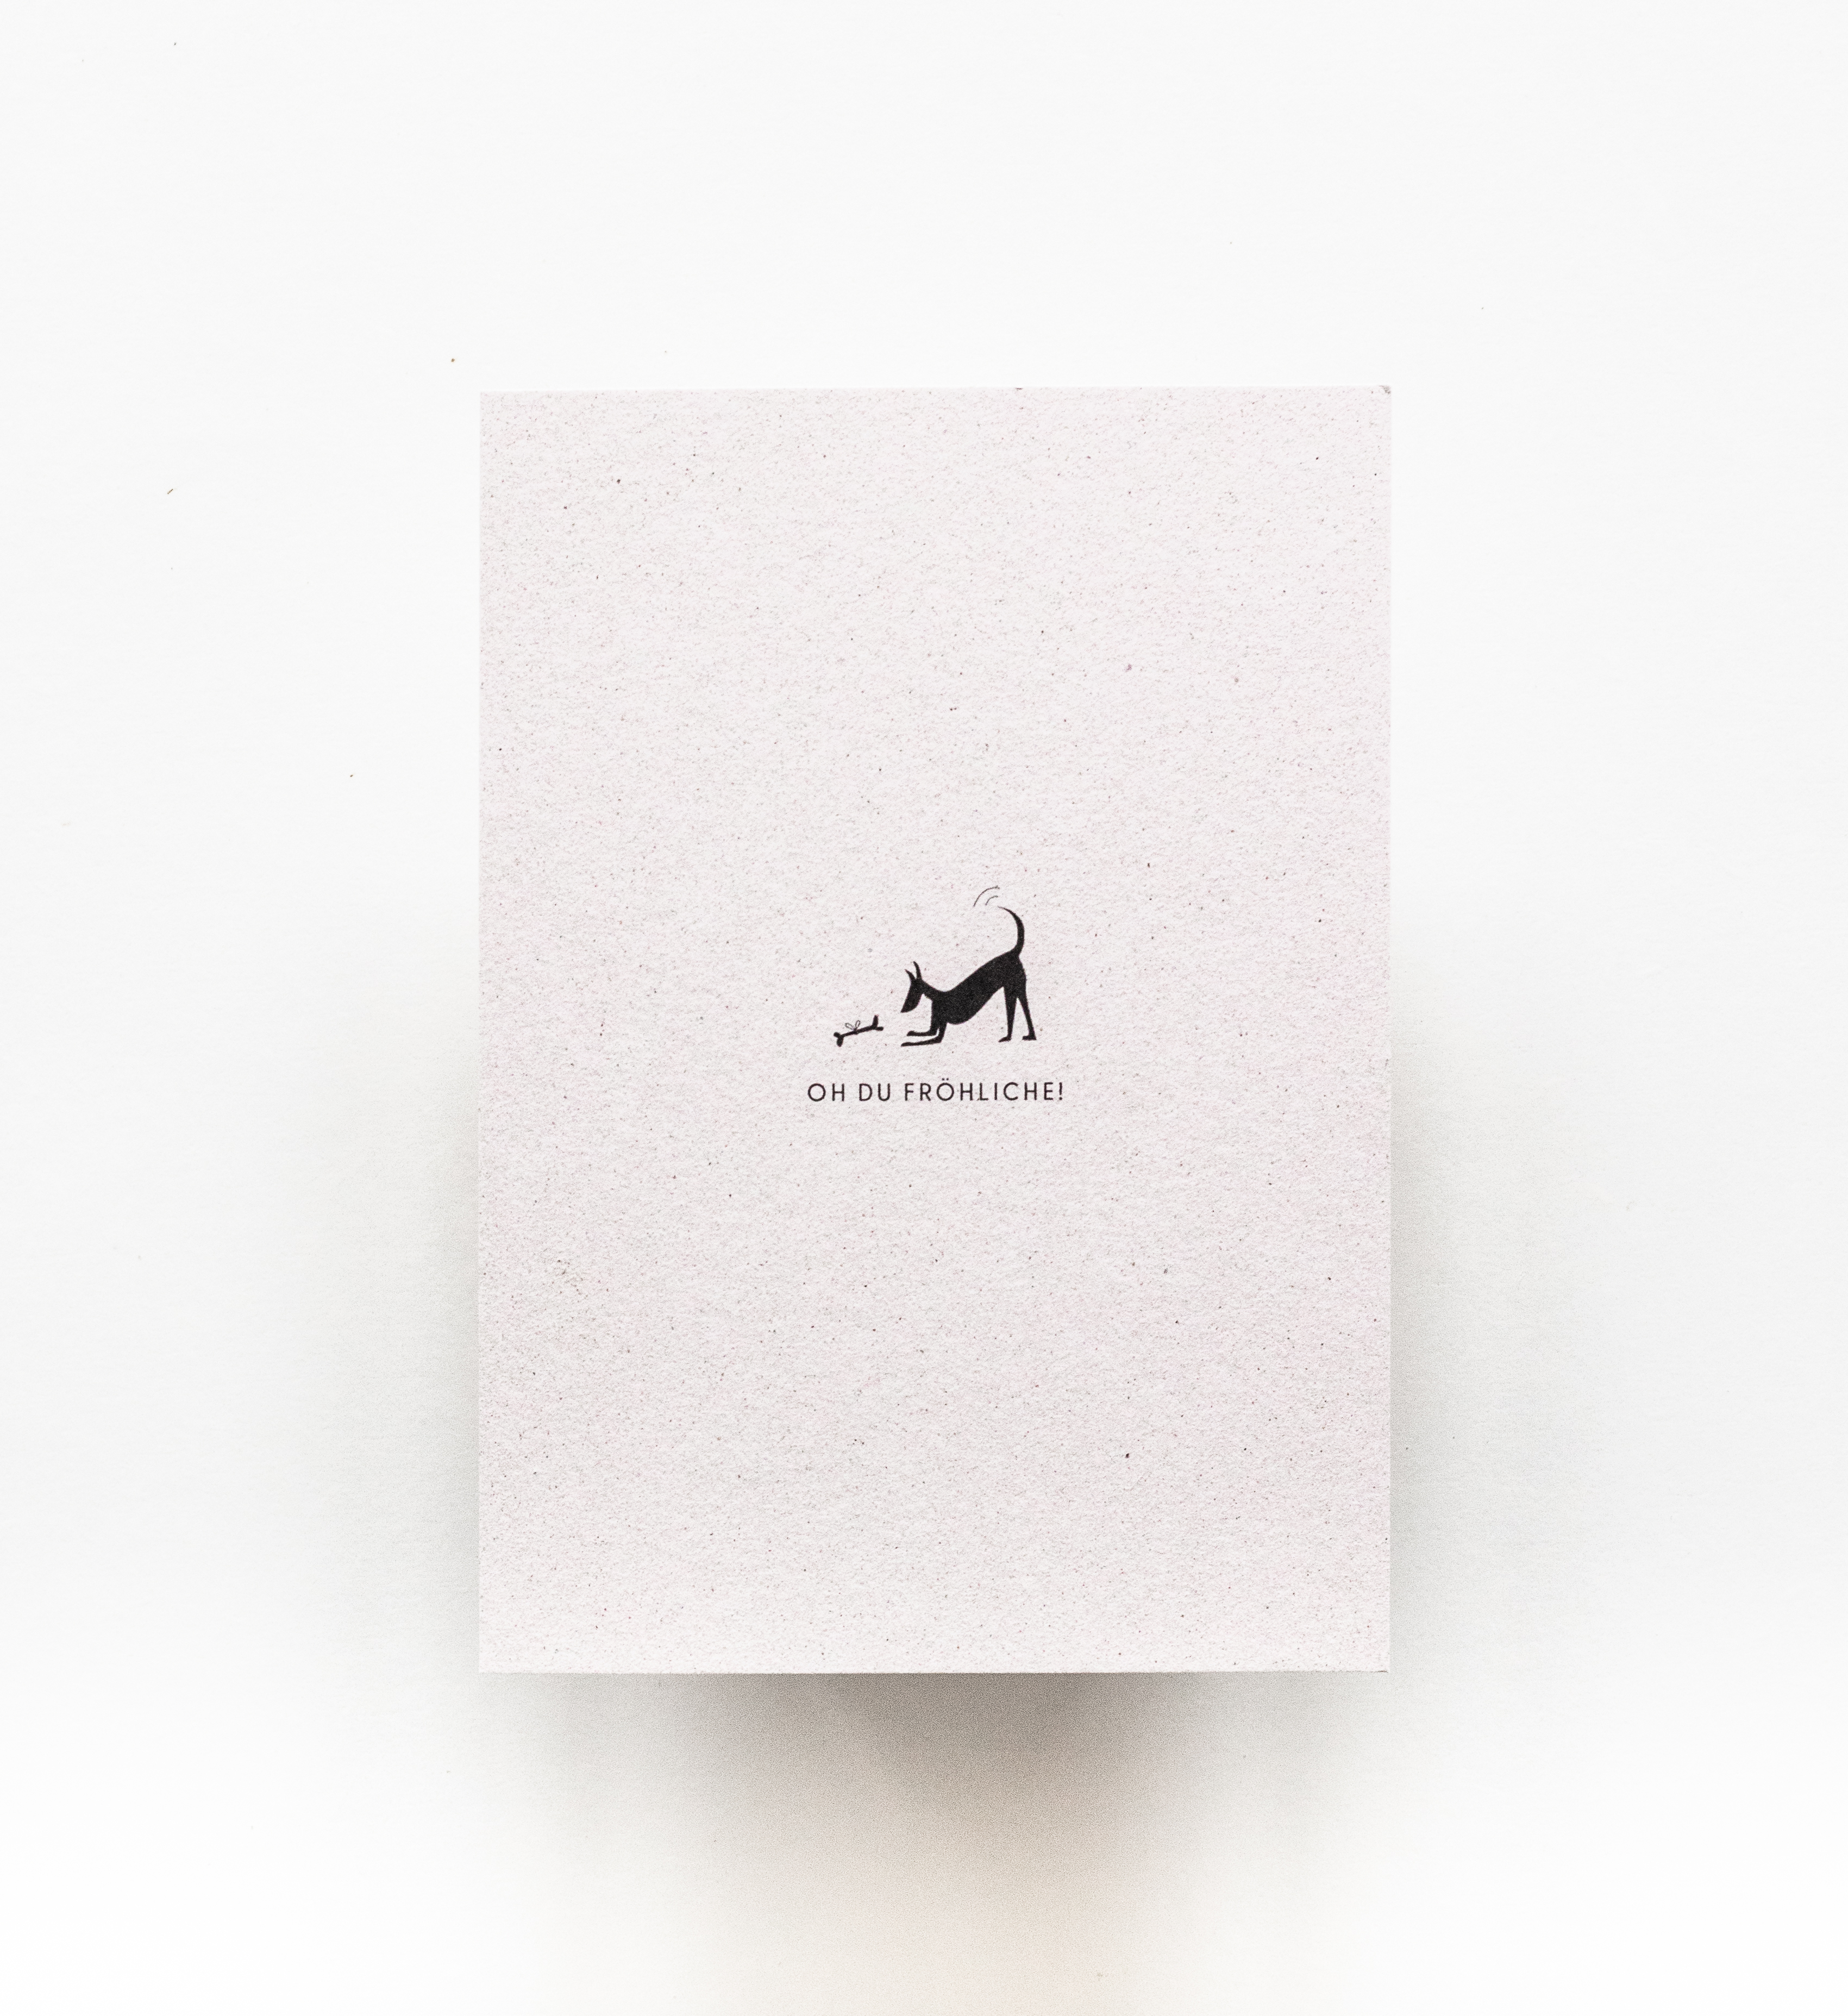 Hundeweihnachtskarte als Geschenk | frauchenglueck.ch